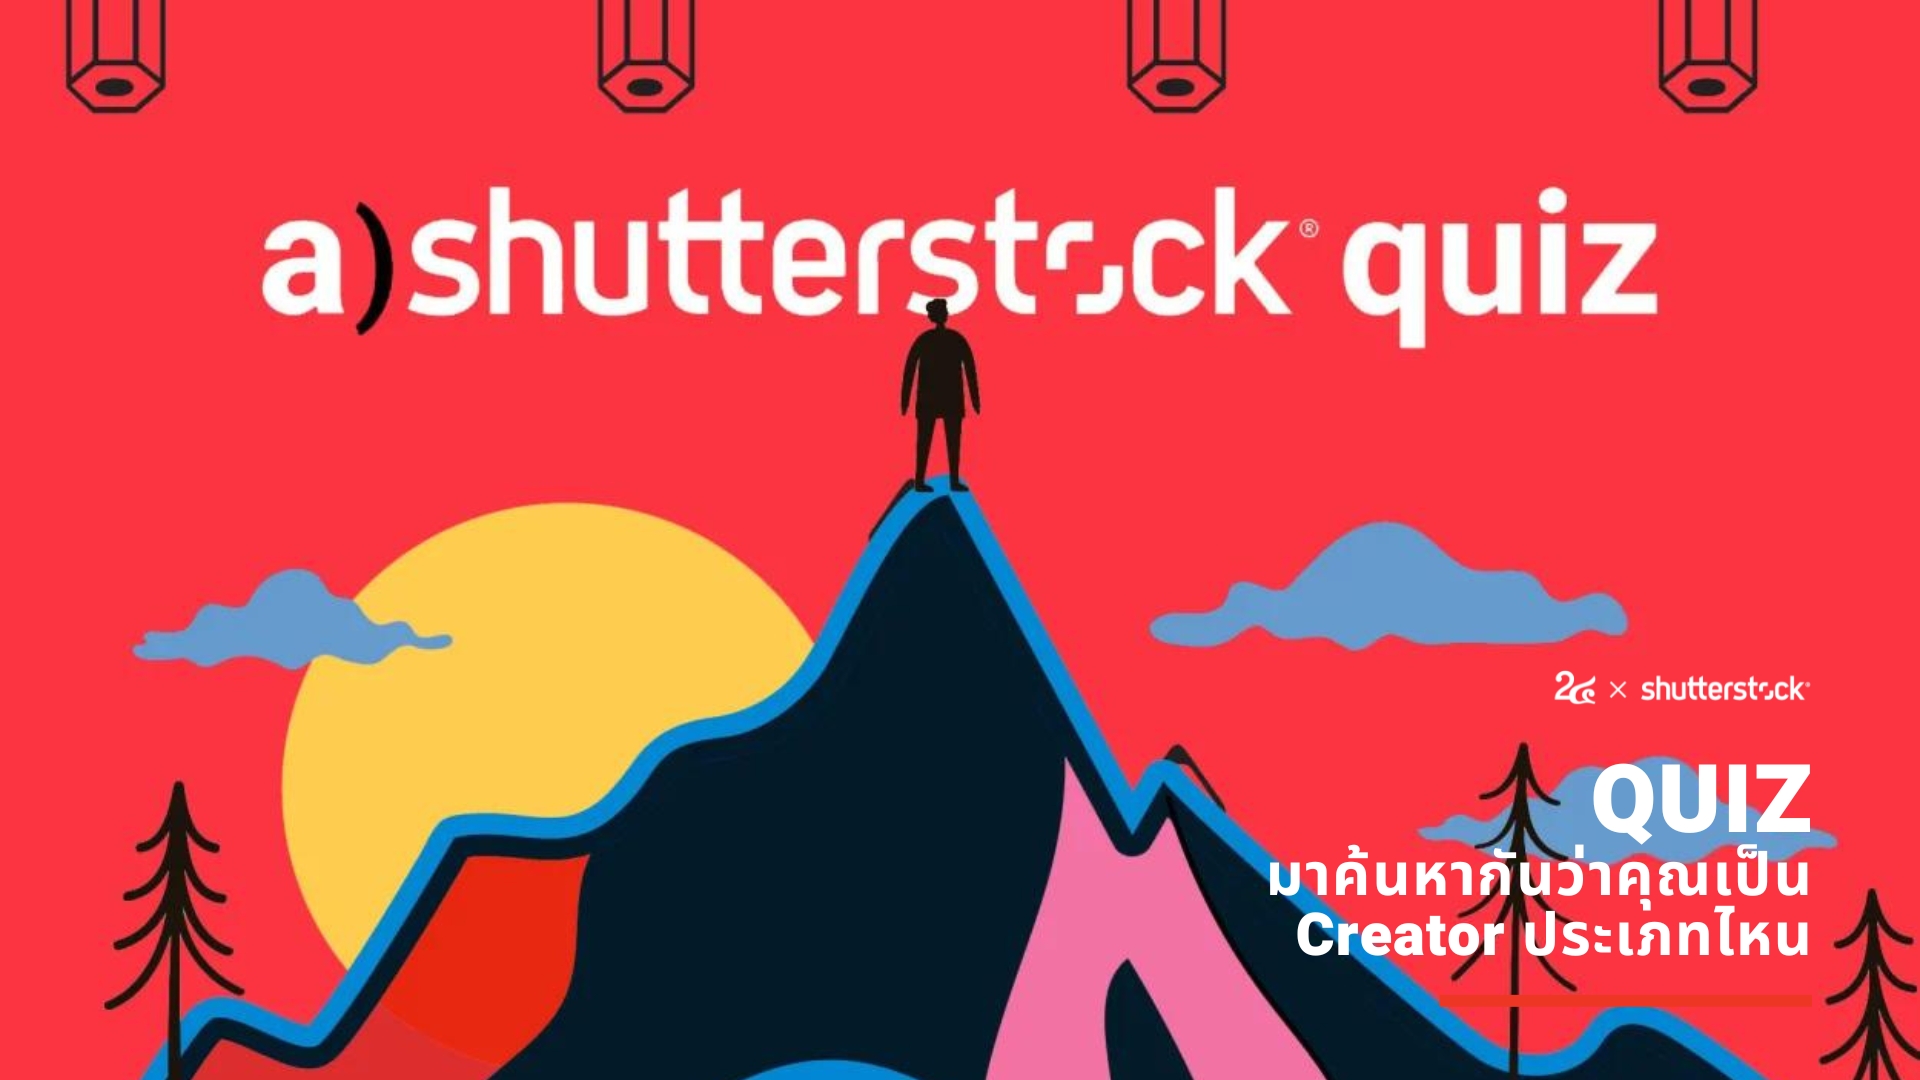 หางาน สมัครงาน ที่ Number 24 x Shutterstock